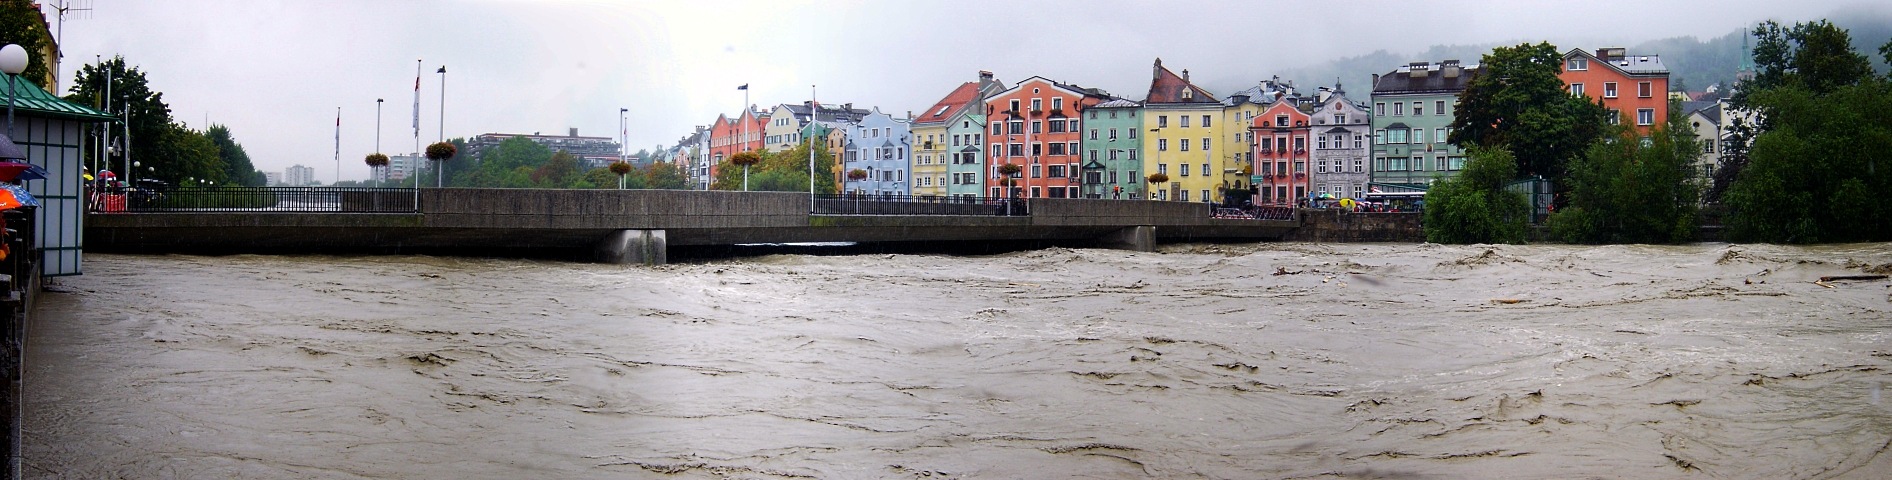 Panorama vom Hochwasser in Innsbruck am 23.08.2005 bei der Innsbrucker Innbrücke neben der Altstadt